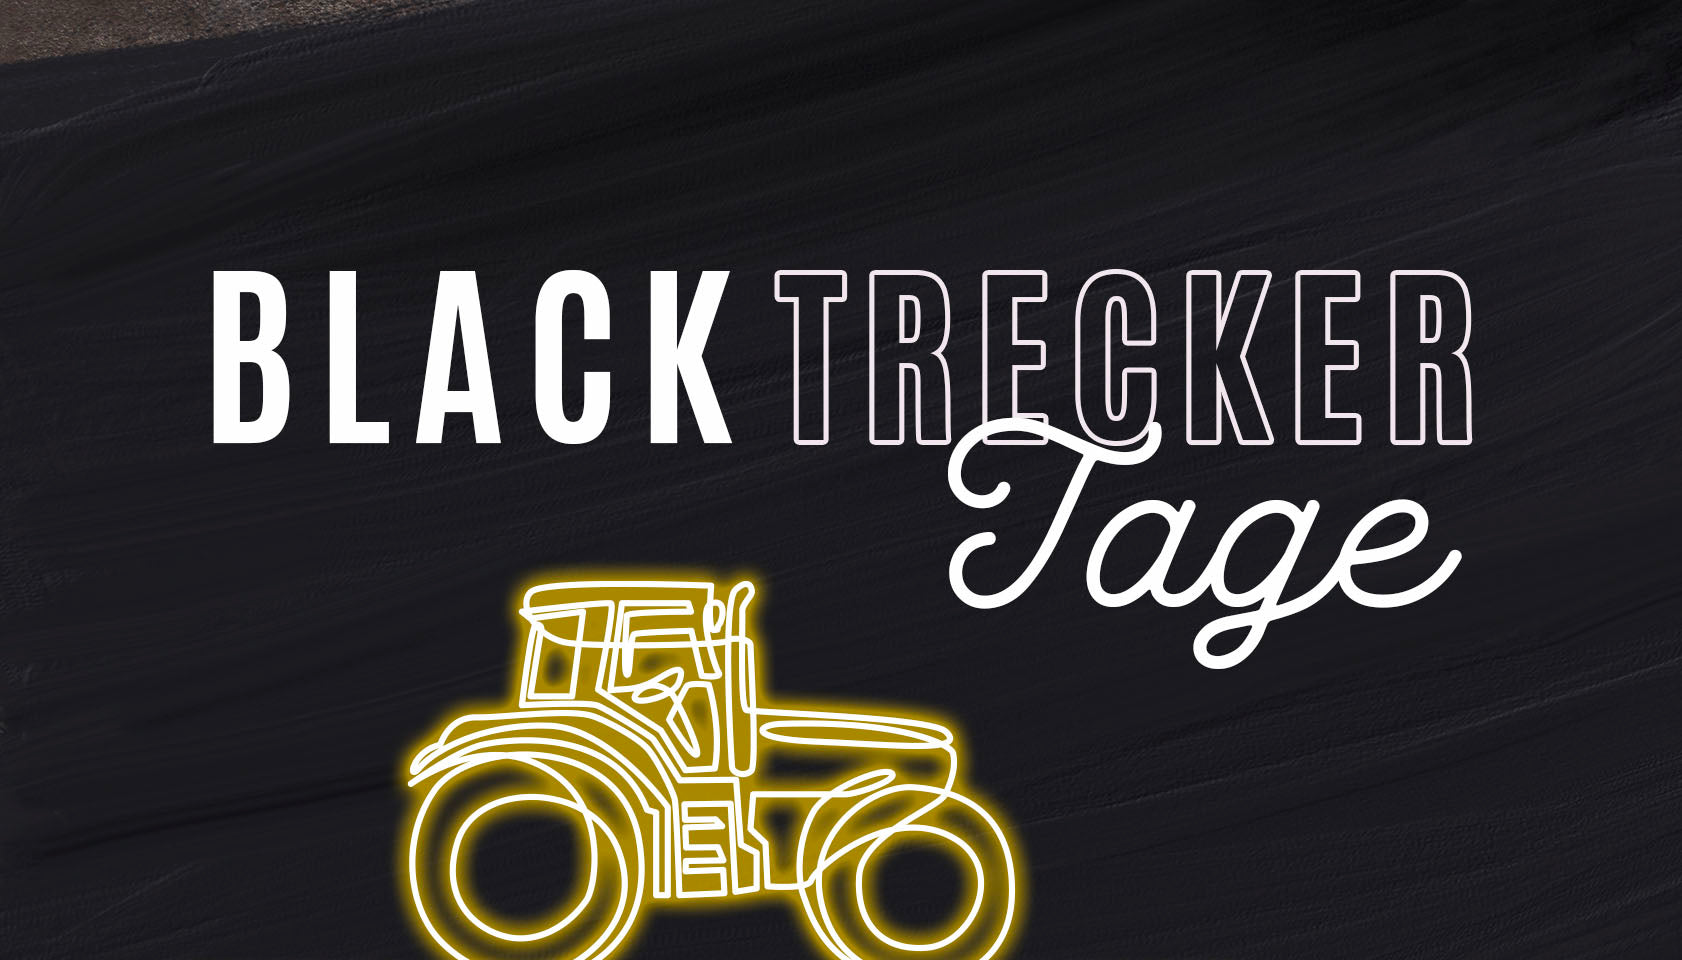 Black Friday = Black Trecker